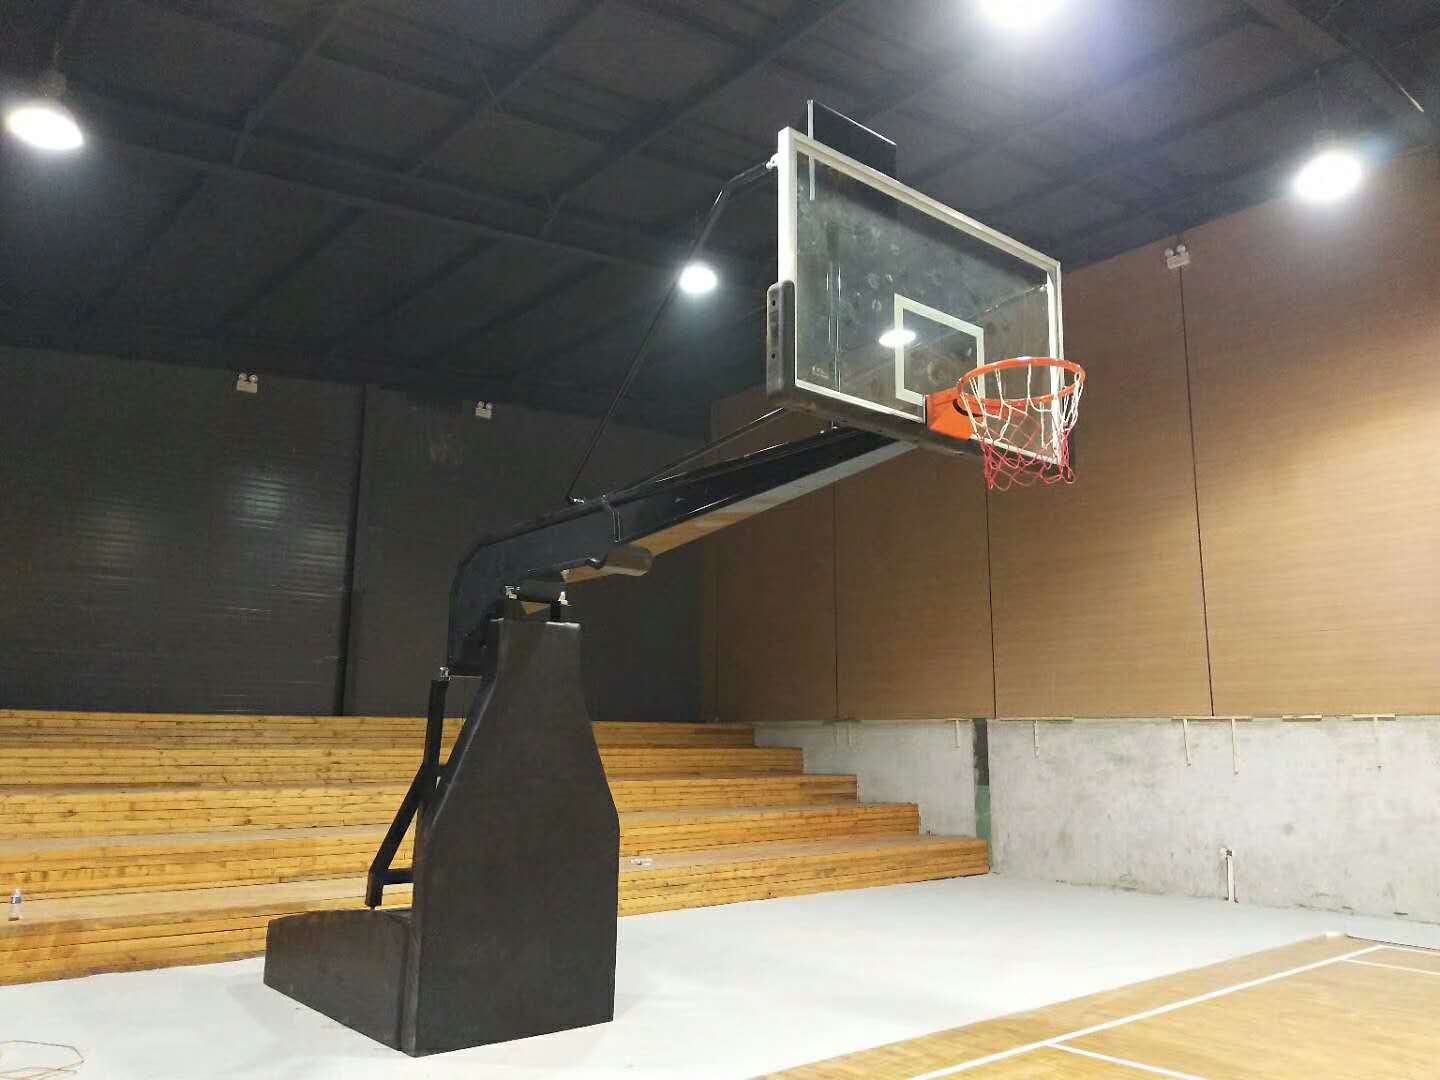 淘宝城购物中心篮球架图片